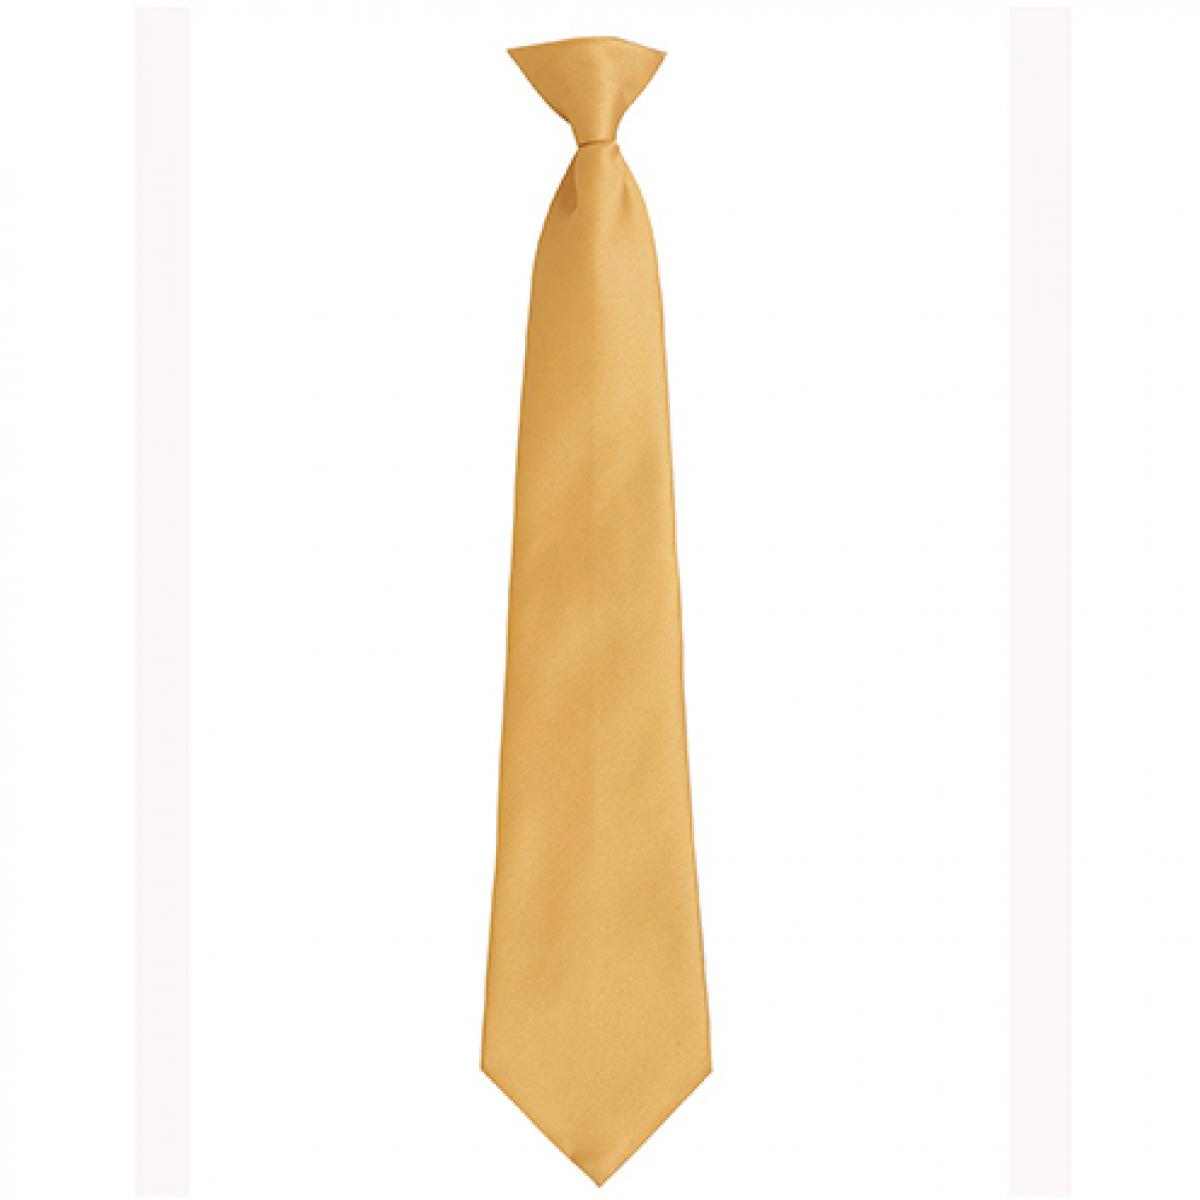 Hersteller: Premier Workwear Herstellernummer: PR785 Artikelbezeichnung: ´Colours´ Fashion Clip Tie Farbe: Gold (ca. Pantone 7499C)